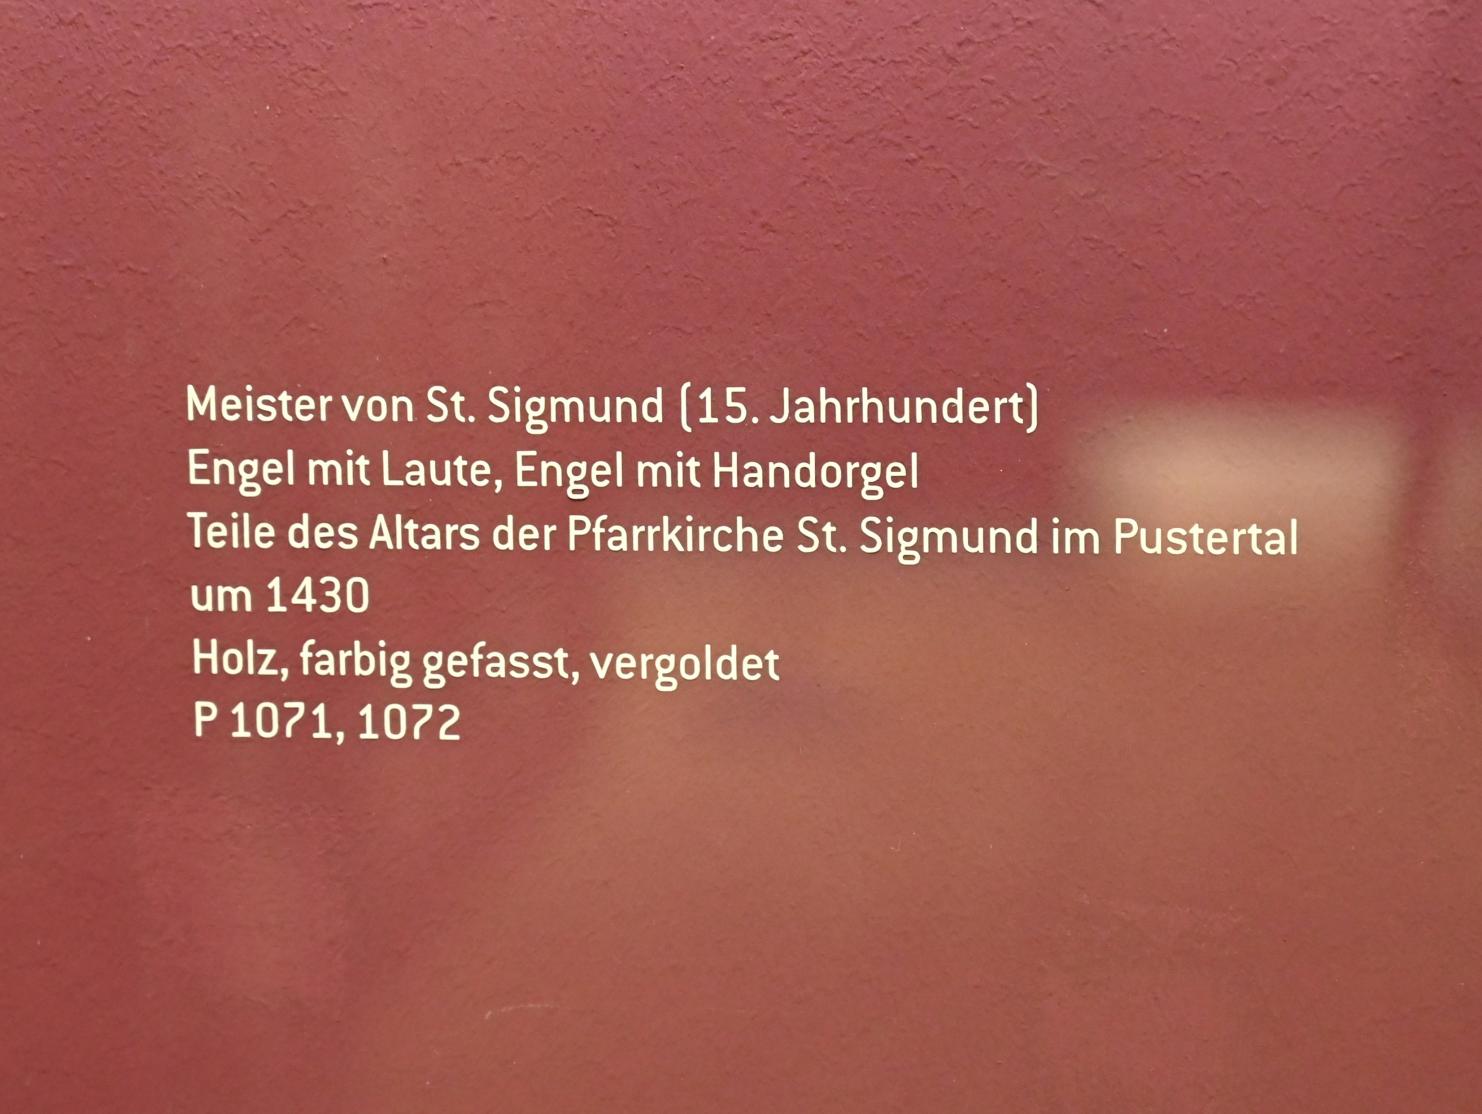 Meister von St. Sigmund (1430), Engel mit Handorgel, St. Sigmund (Kiens), Pfarrkirche St. Sigmund, jetzt Innsbruck, Tiroler Landesmuseum, Ferdinandeum, Mittelalter 2, um 1430, Bild 2/2